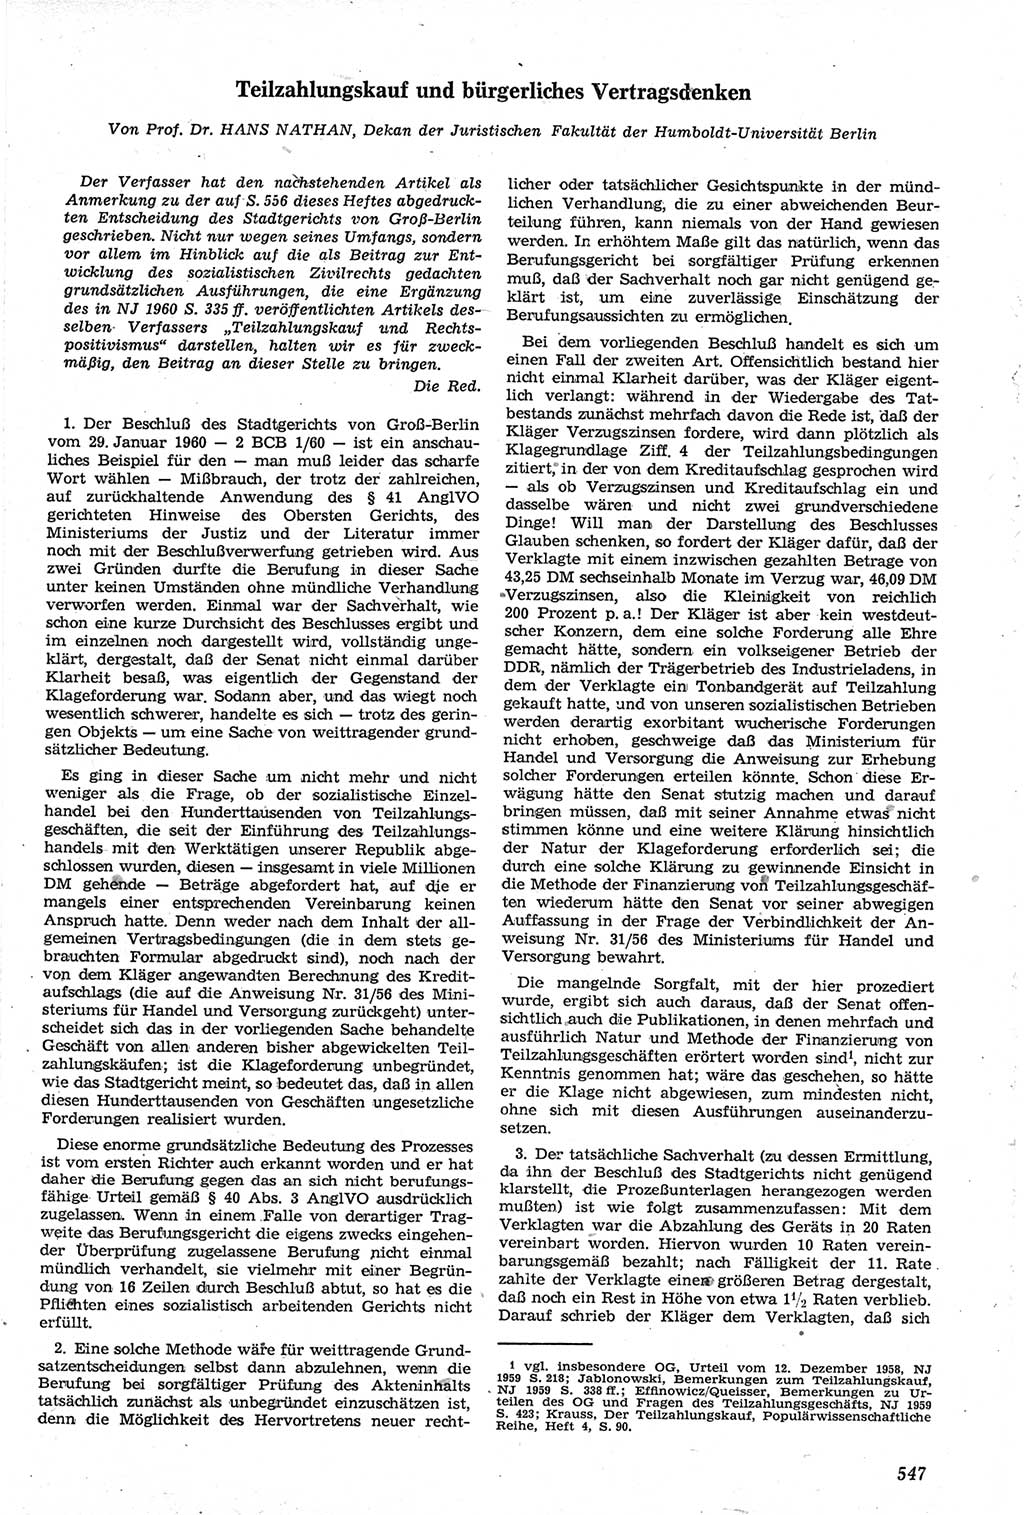 Neue Justiz (NJ), Zeitschrift für Recht und Rechtswissenschaft [Deutsche Demokratische Republik (DDR)], 14. Jahrgang 1960, Seite 547 (NJ DDR 1960, S. 547)